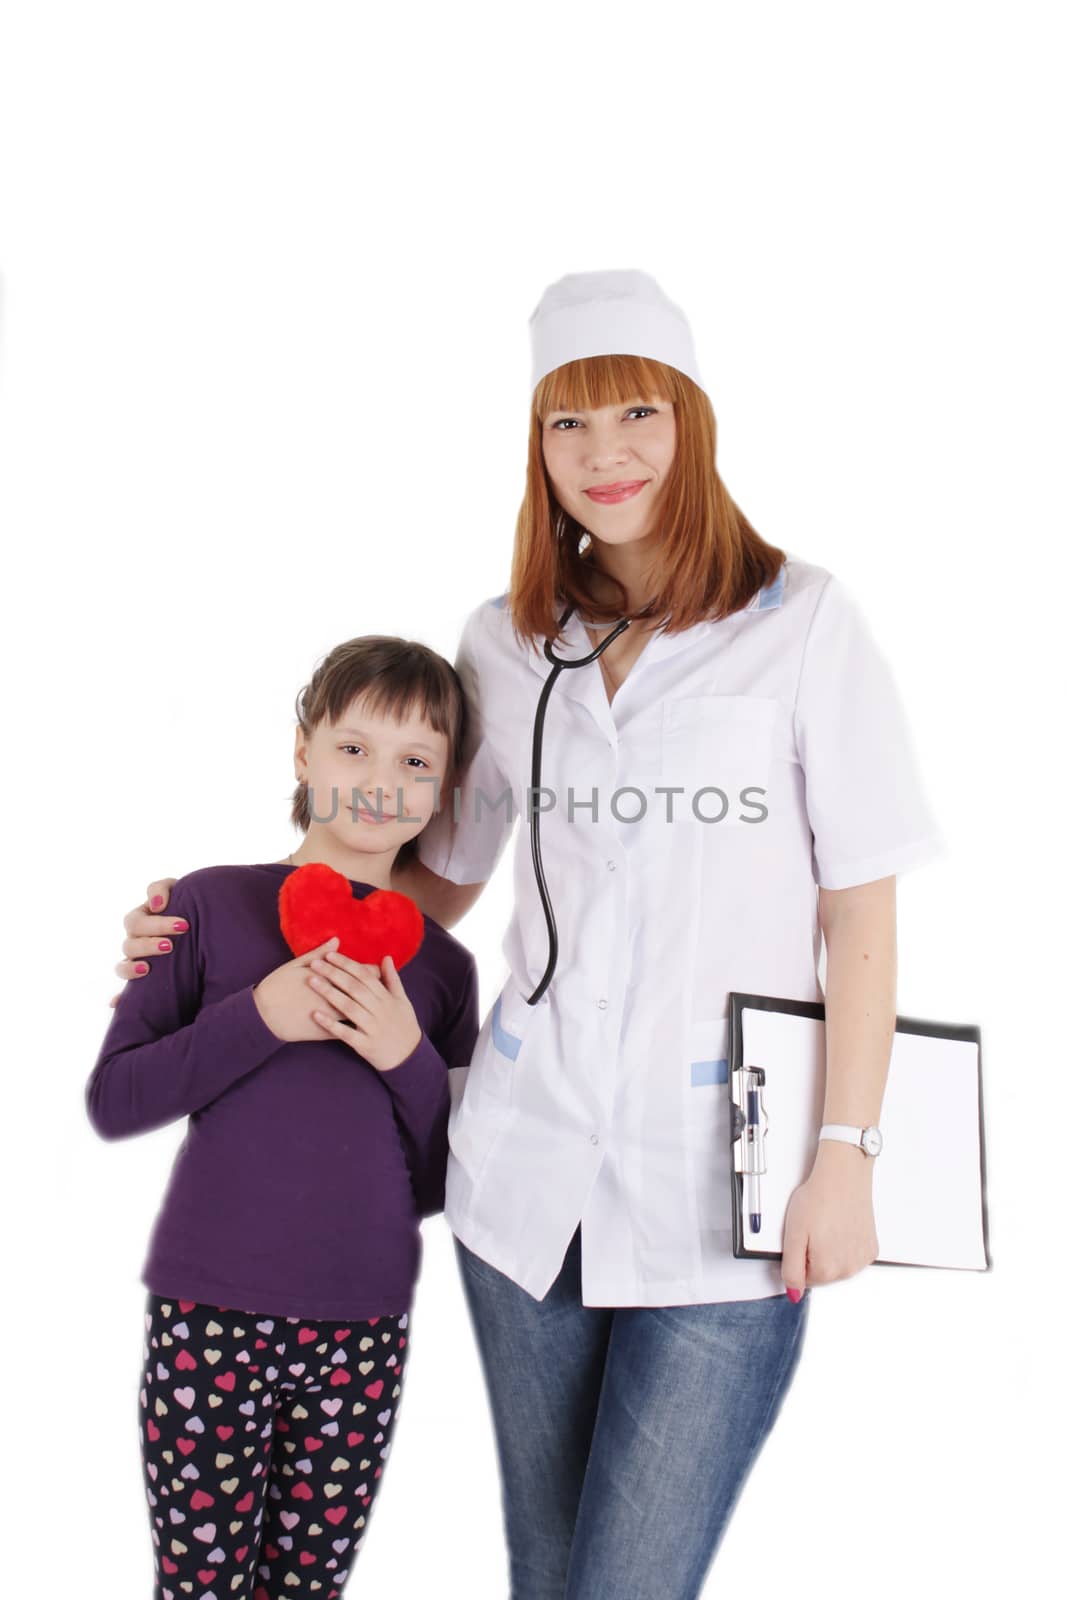 Smiling female doctor and little girl holding plush heart over white